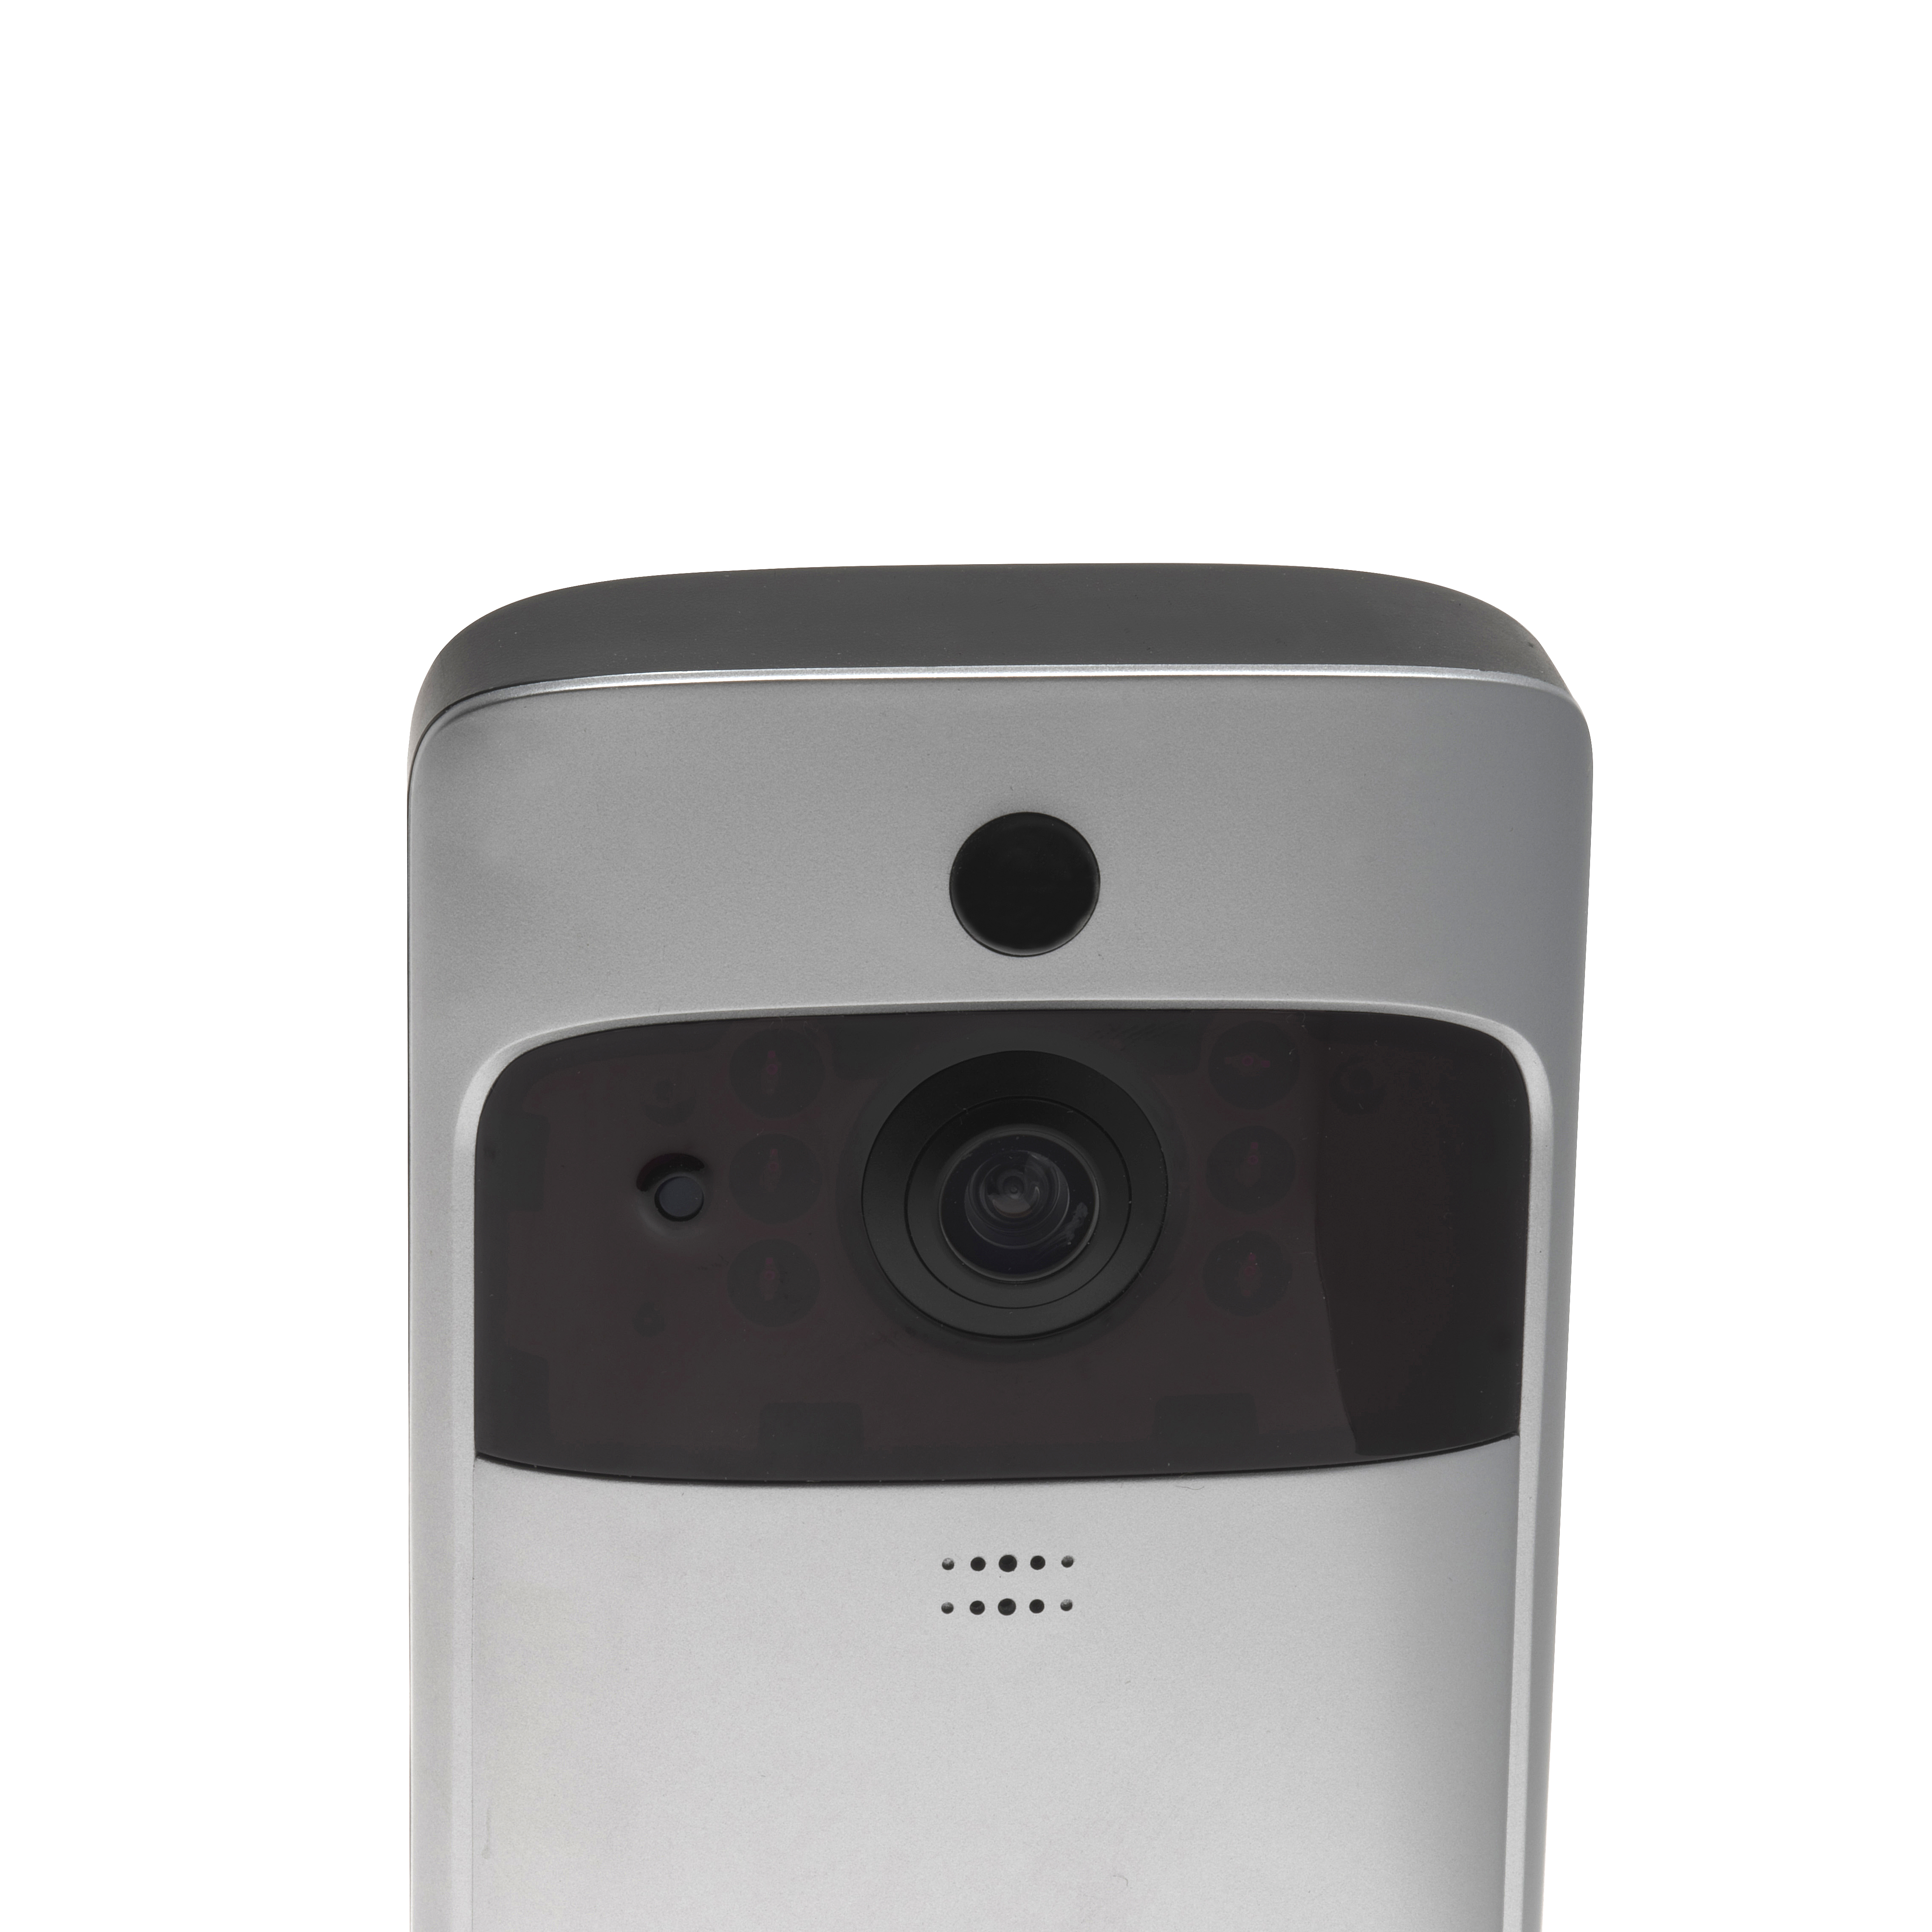 Aplicación Gratuita para Android y iOS Denver Timbre con Video VDB-110 Detección de Movimiento Conexión con teléfono móvil Cámara 720P Videoportero con función Wi-Fi y Timbre Interior Doorbell 